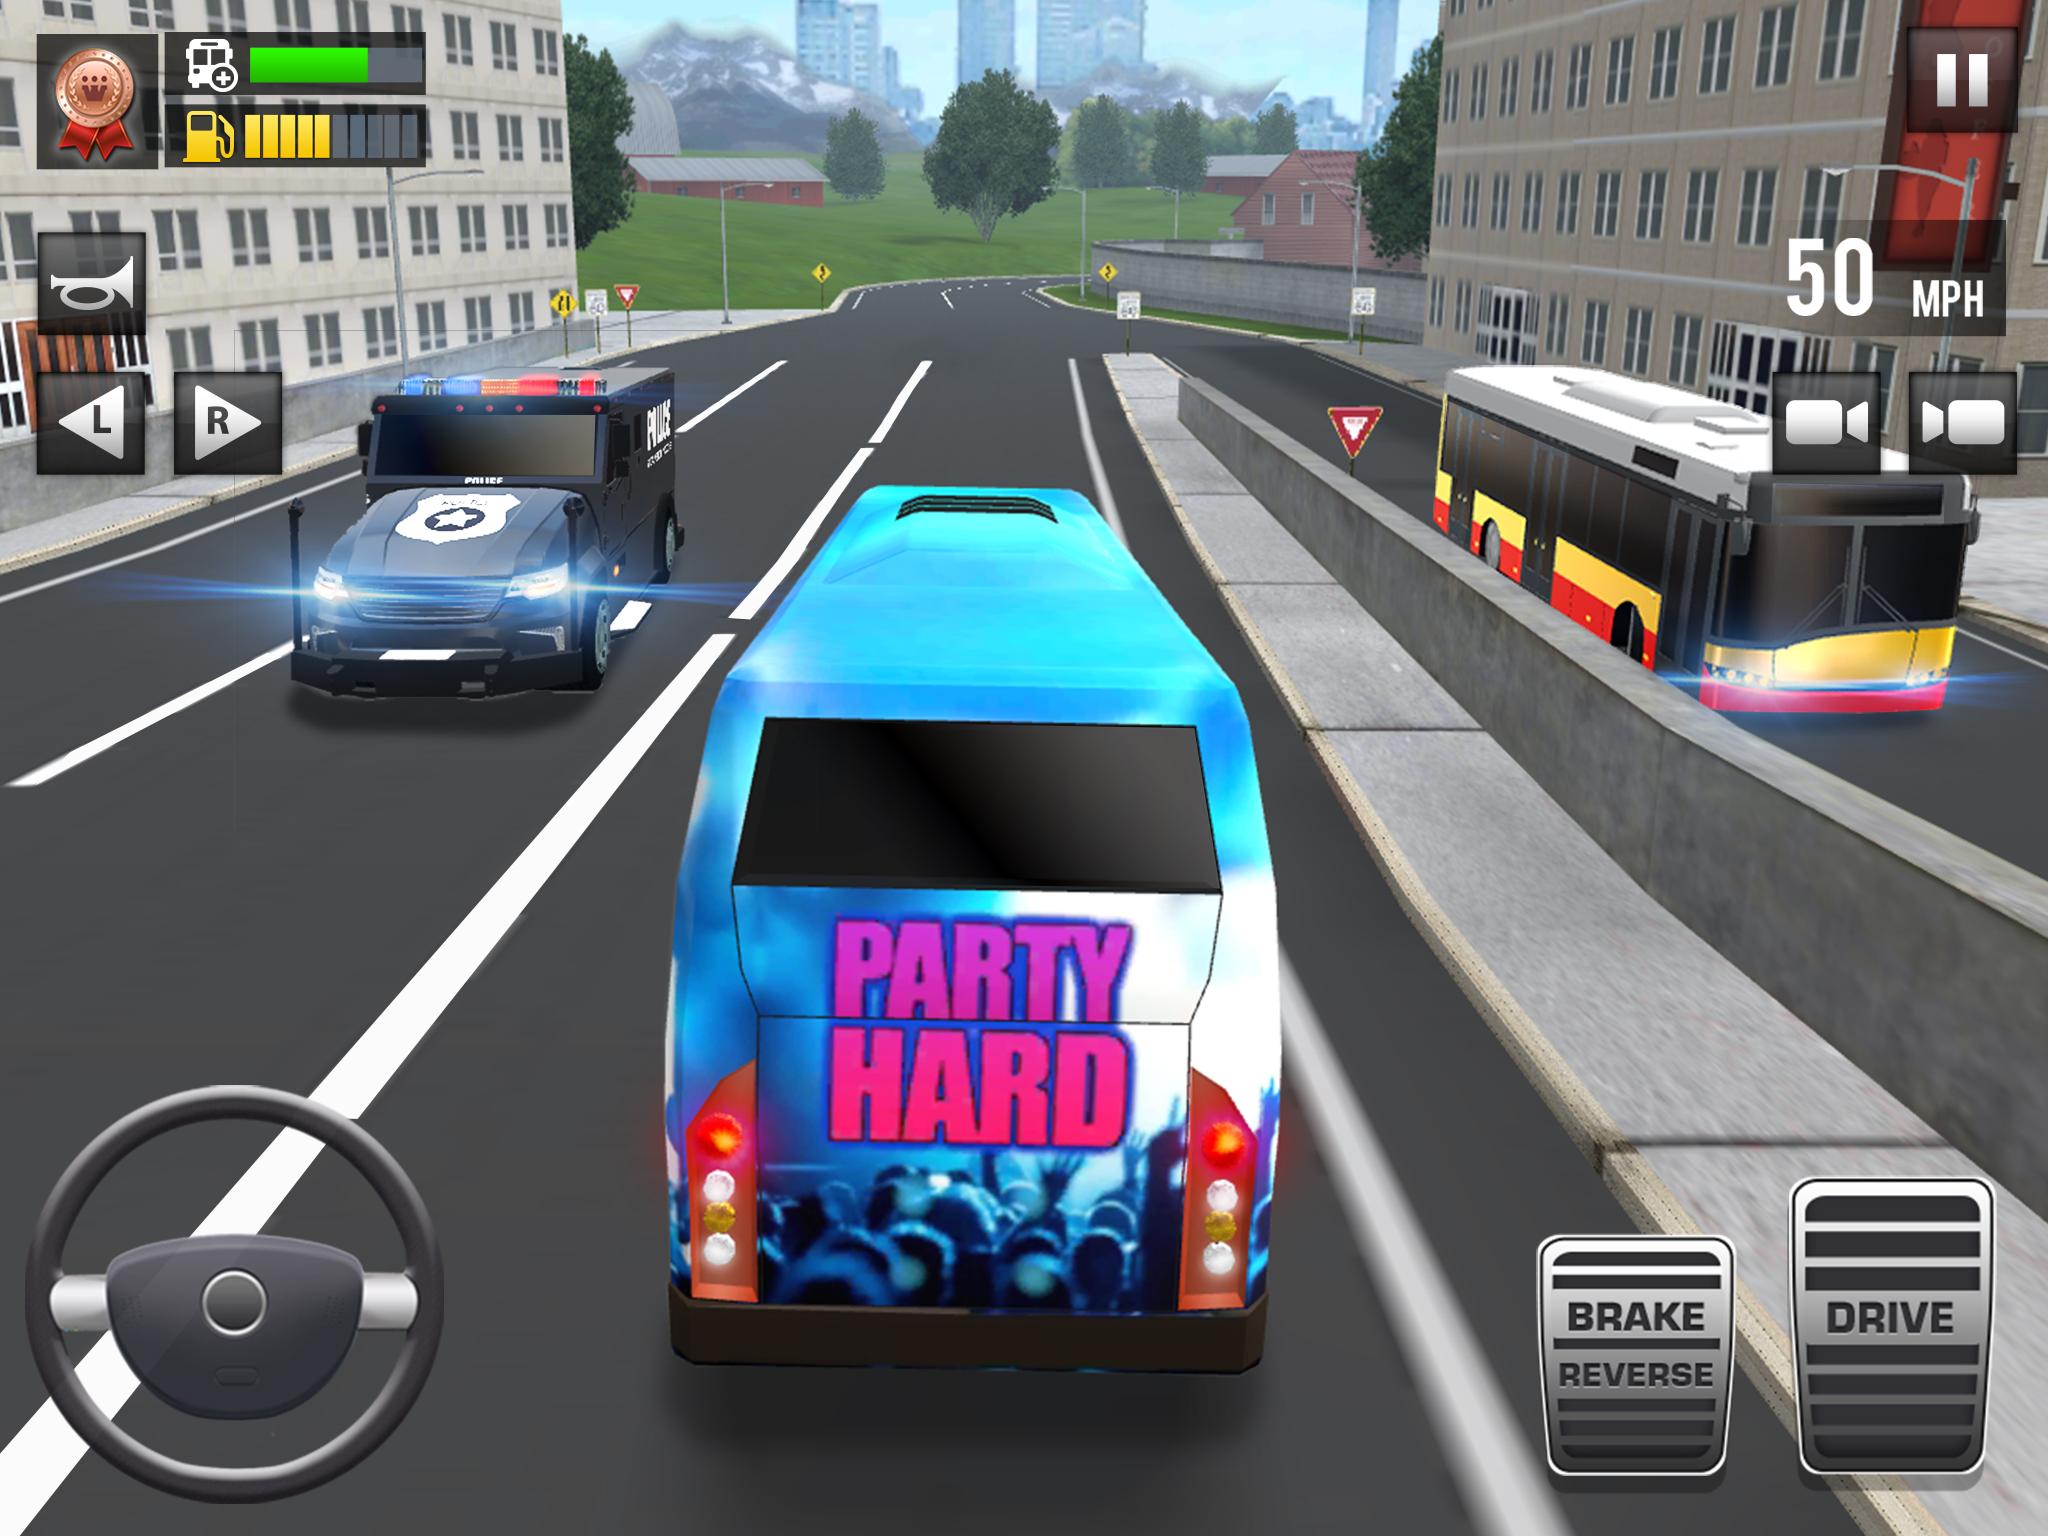 Игру бас симулятор автобус